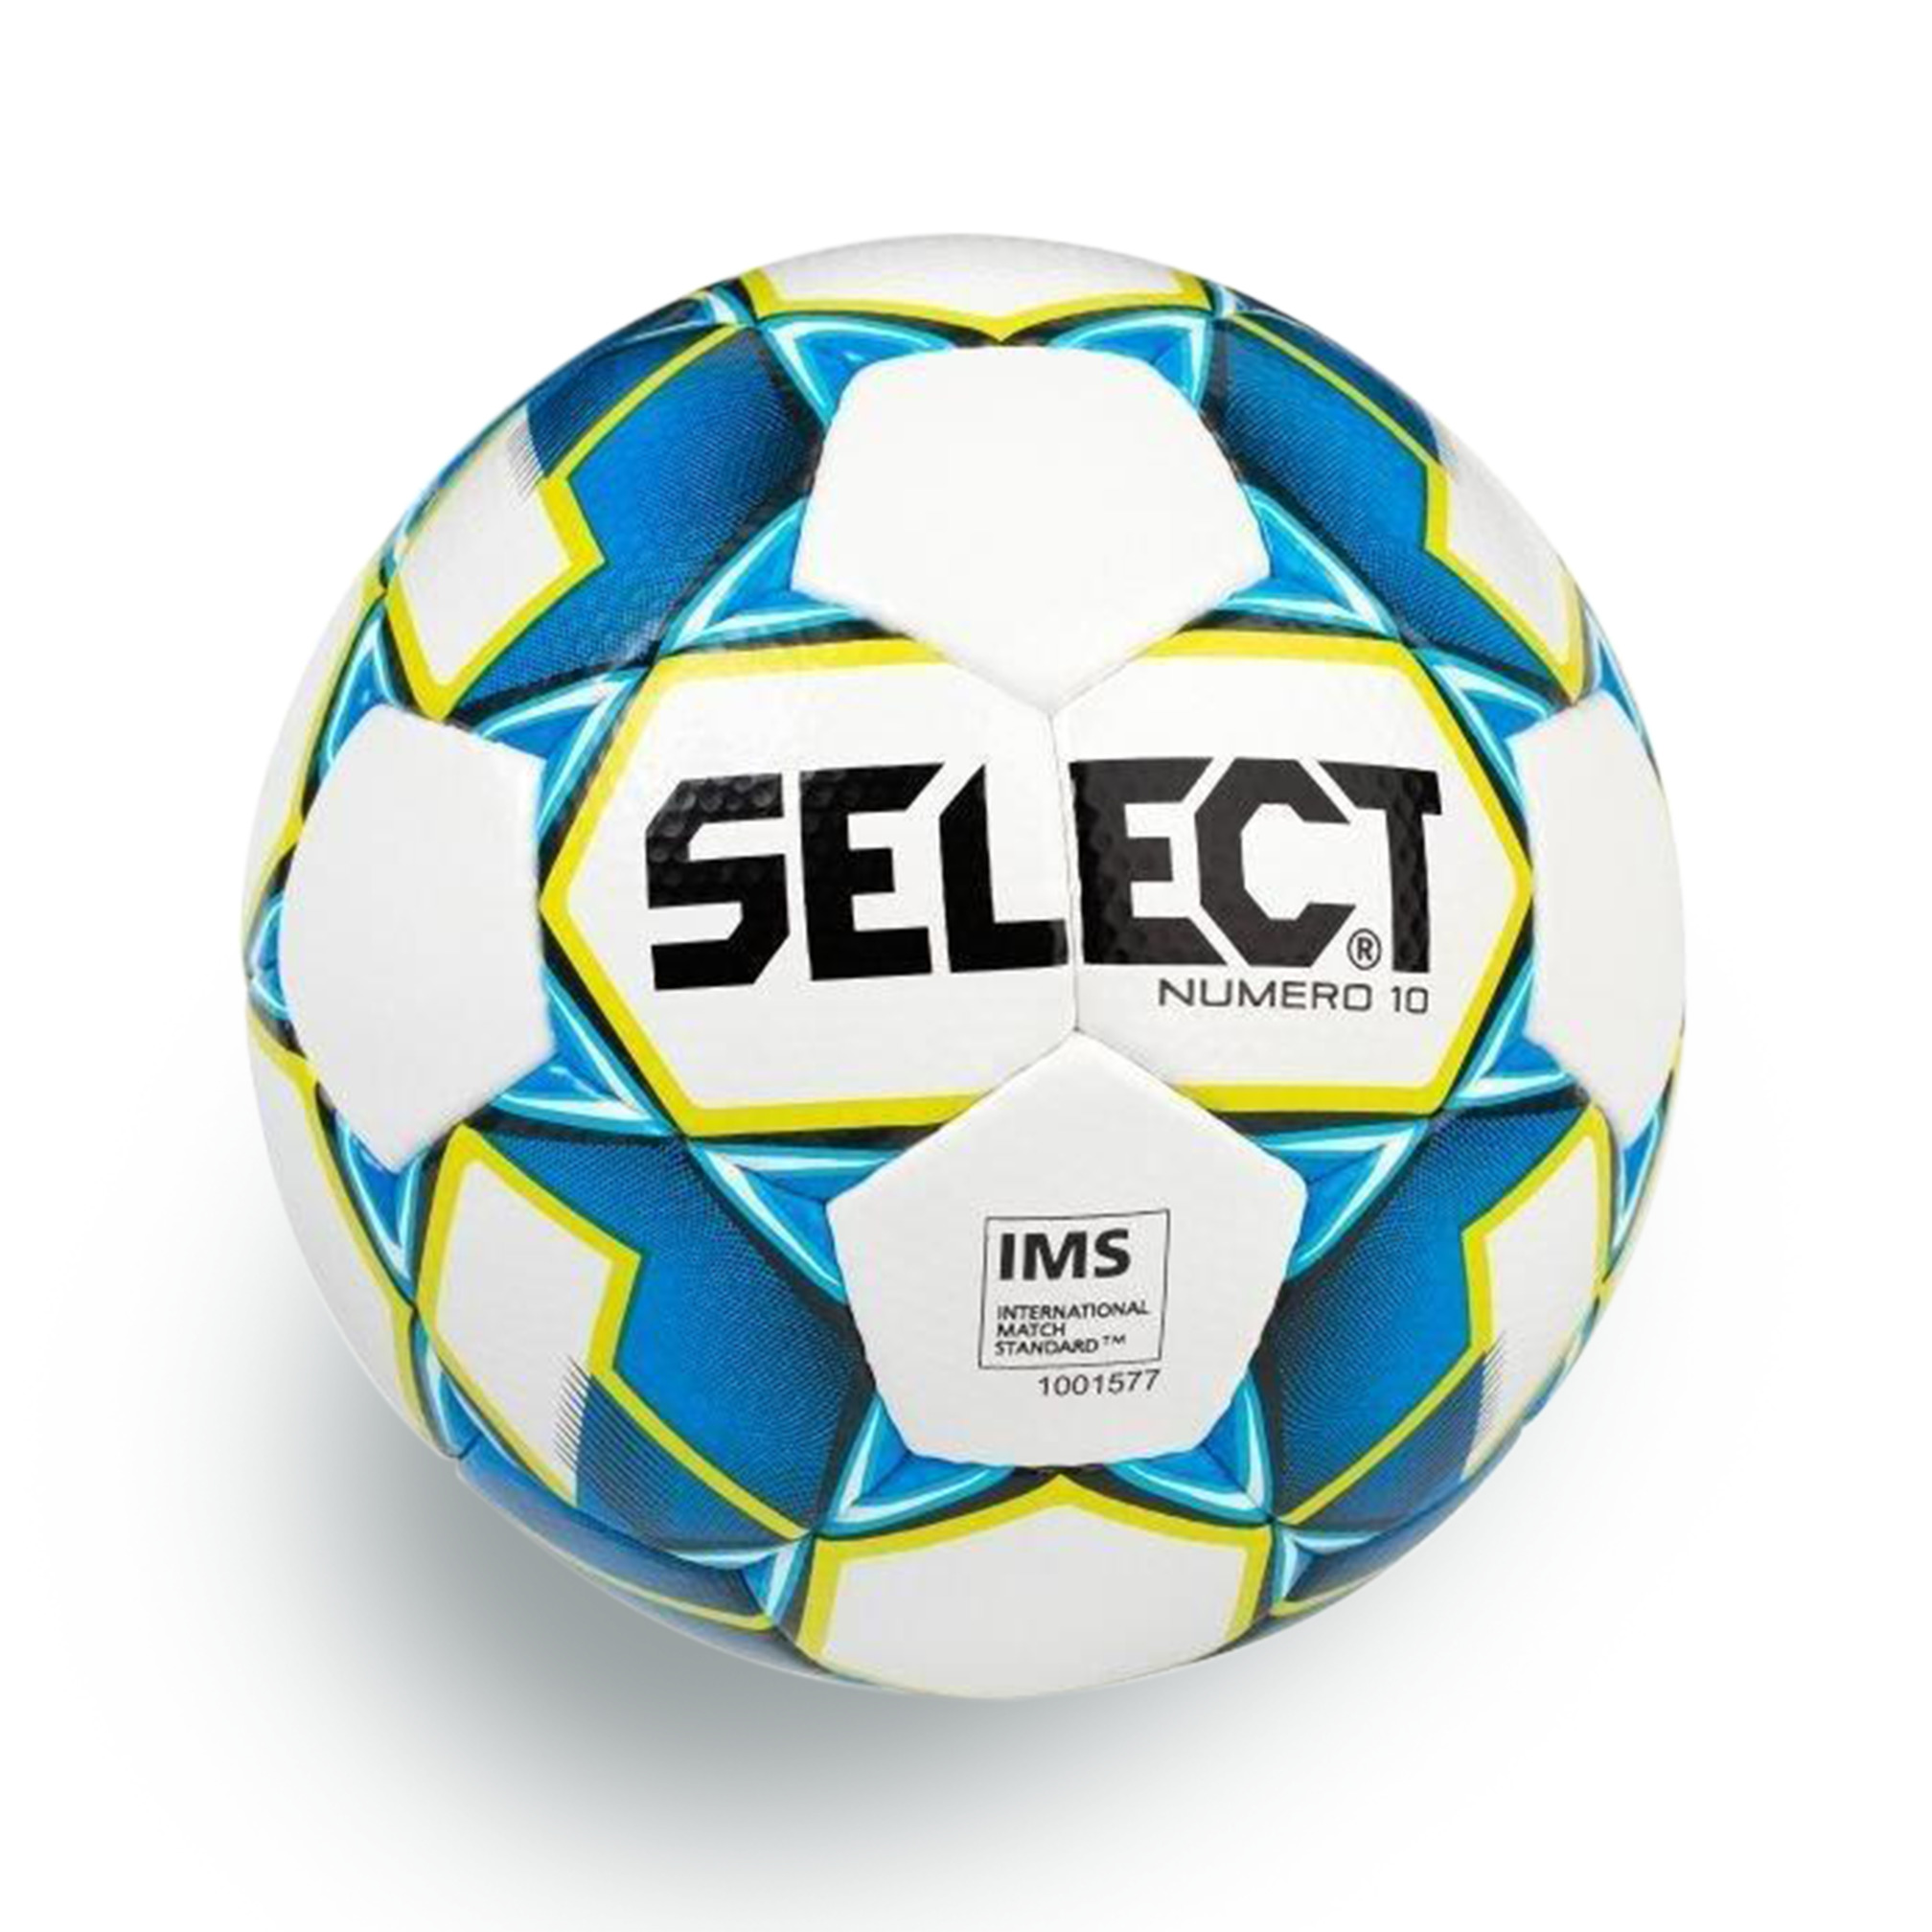 Ballon de football "Select" Numéro 10, T5